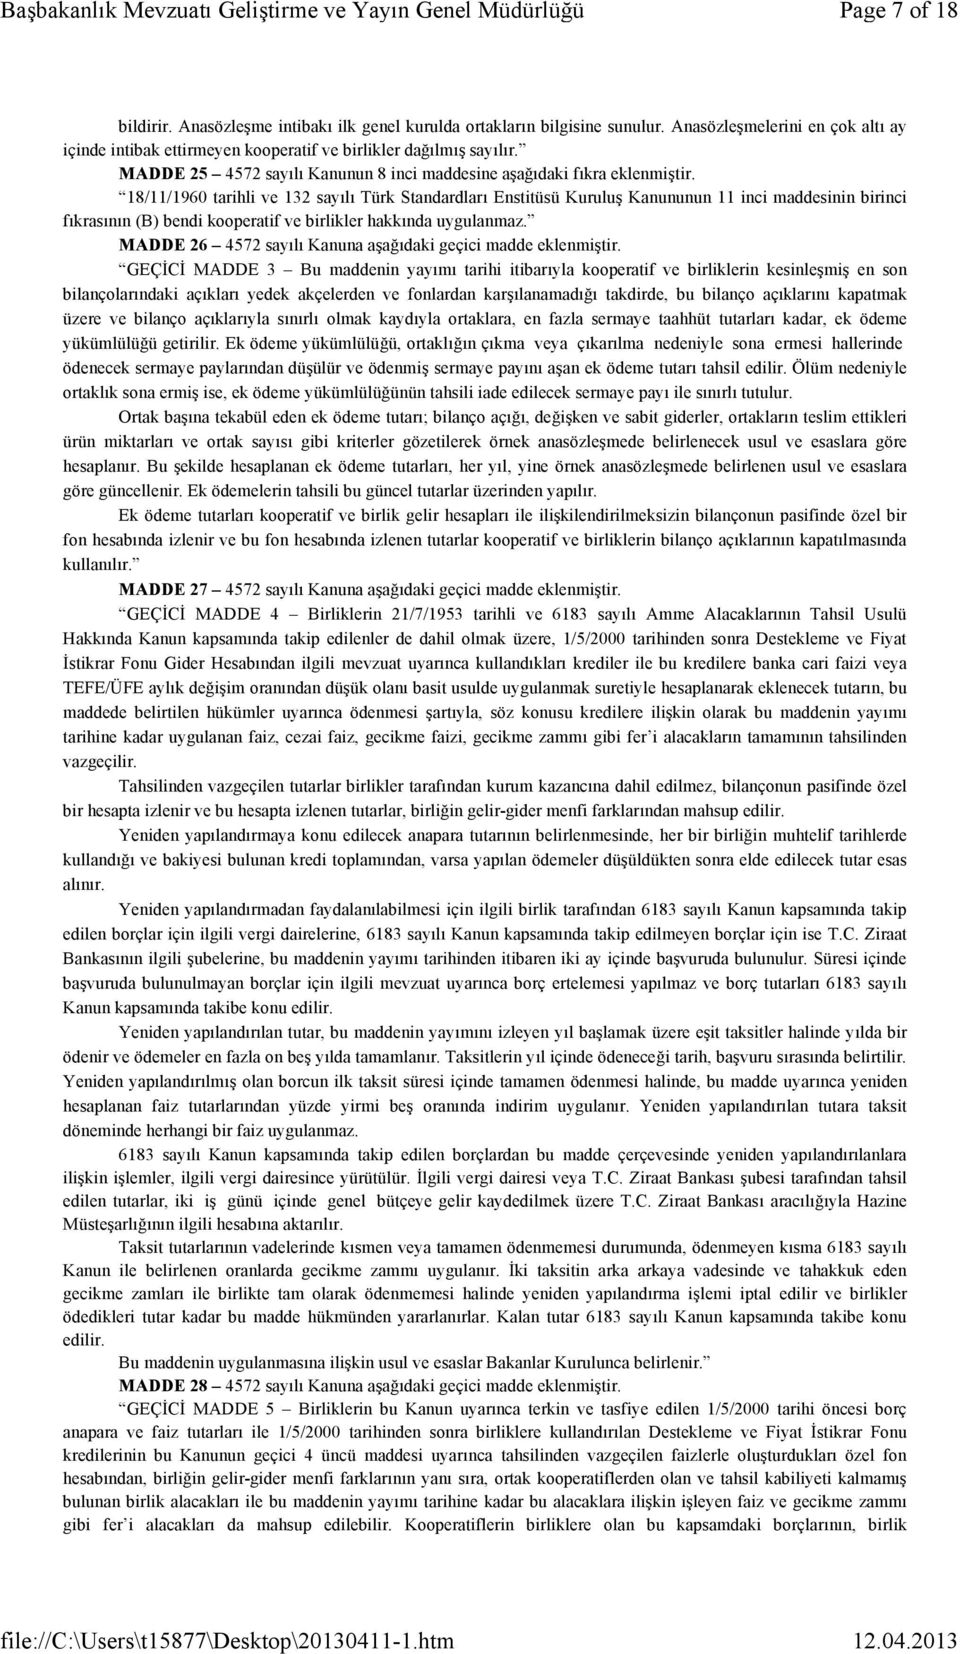 18/11/1960 tarihli ve 132 sayılı Türk Standardları Enstitüsü Kuruluş Kanununun 11 inci maddesinin birinci fıkrasının (B) bendi kooperatif ve birlikler hakkında uygulanmaz.